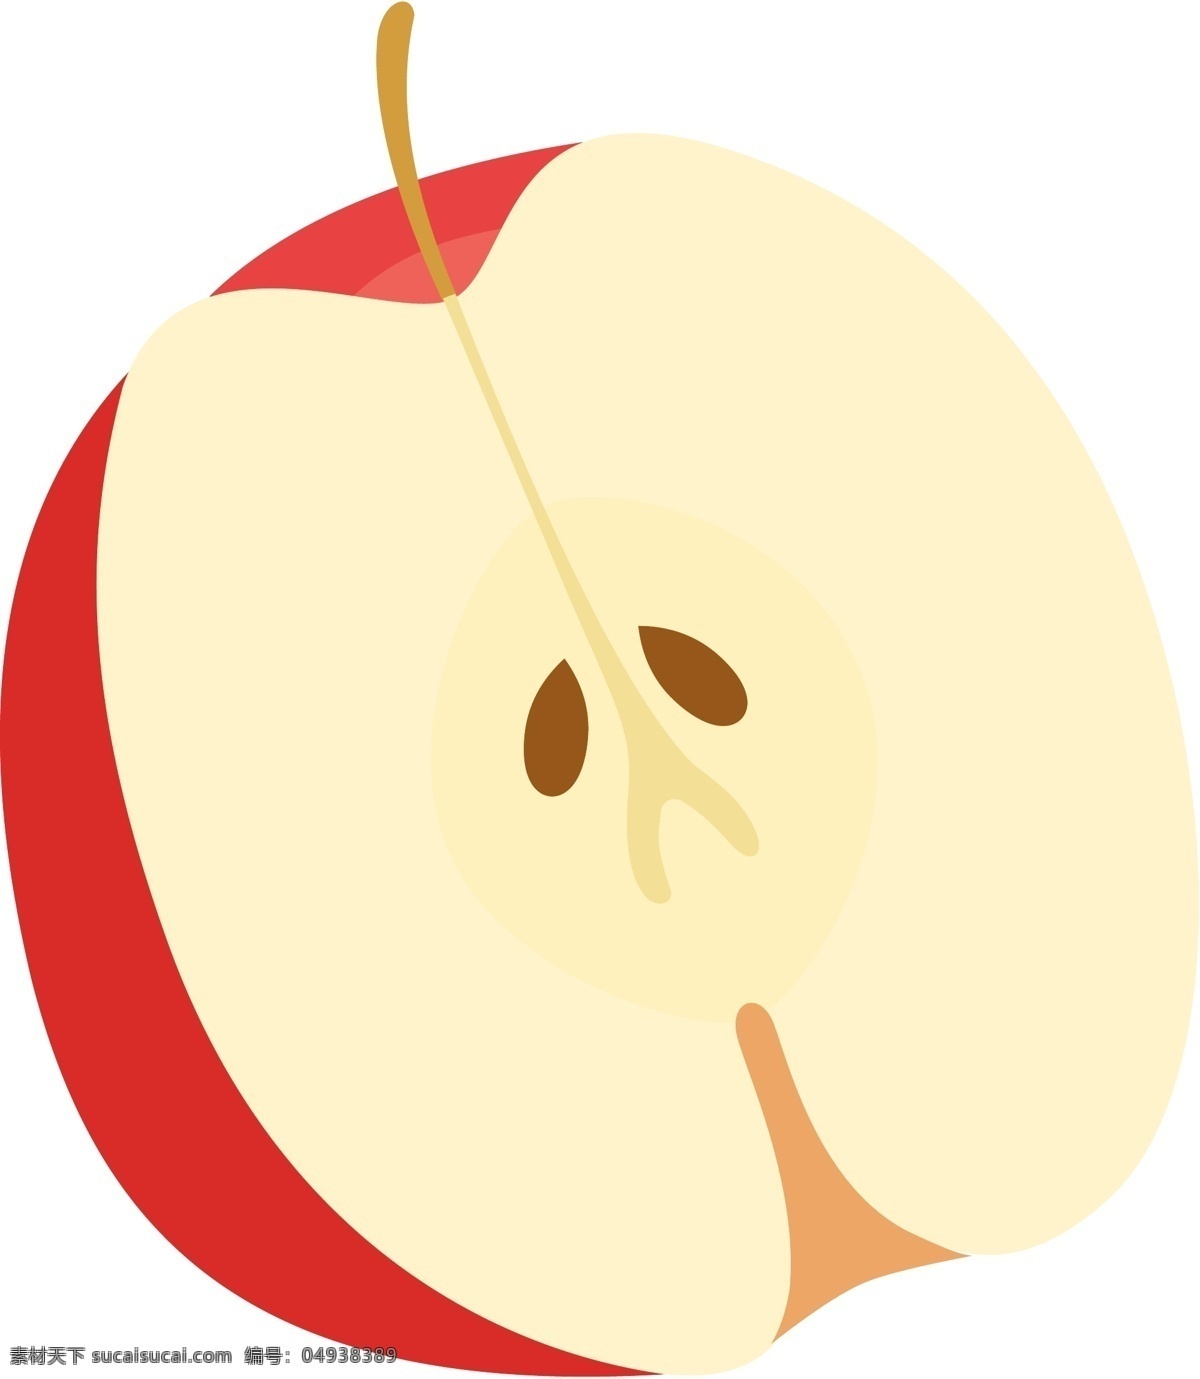 苹果卡通 苹果 卡通苹果 矢量苹果 苹果简笔画 水果 卡通水果 矢量水果 卡通图案